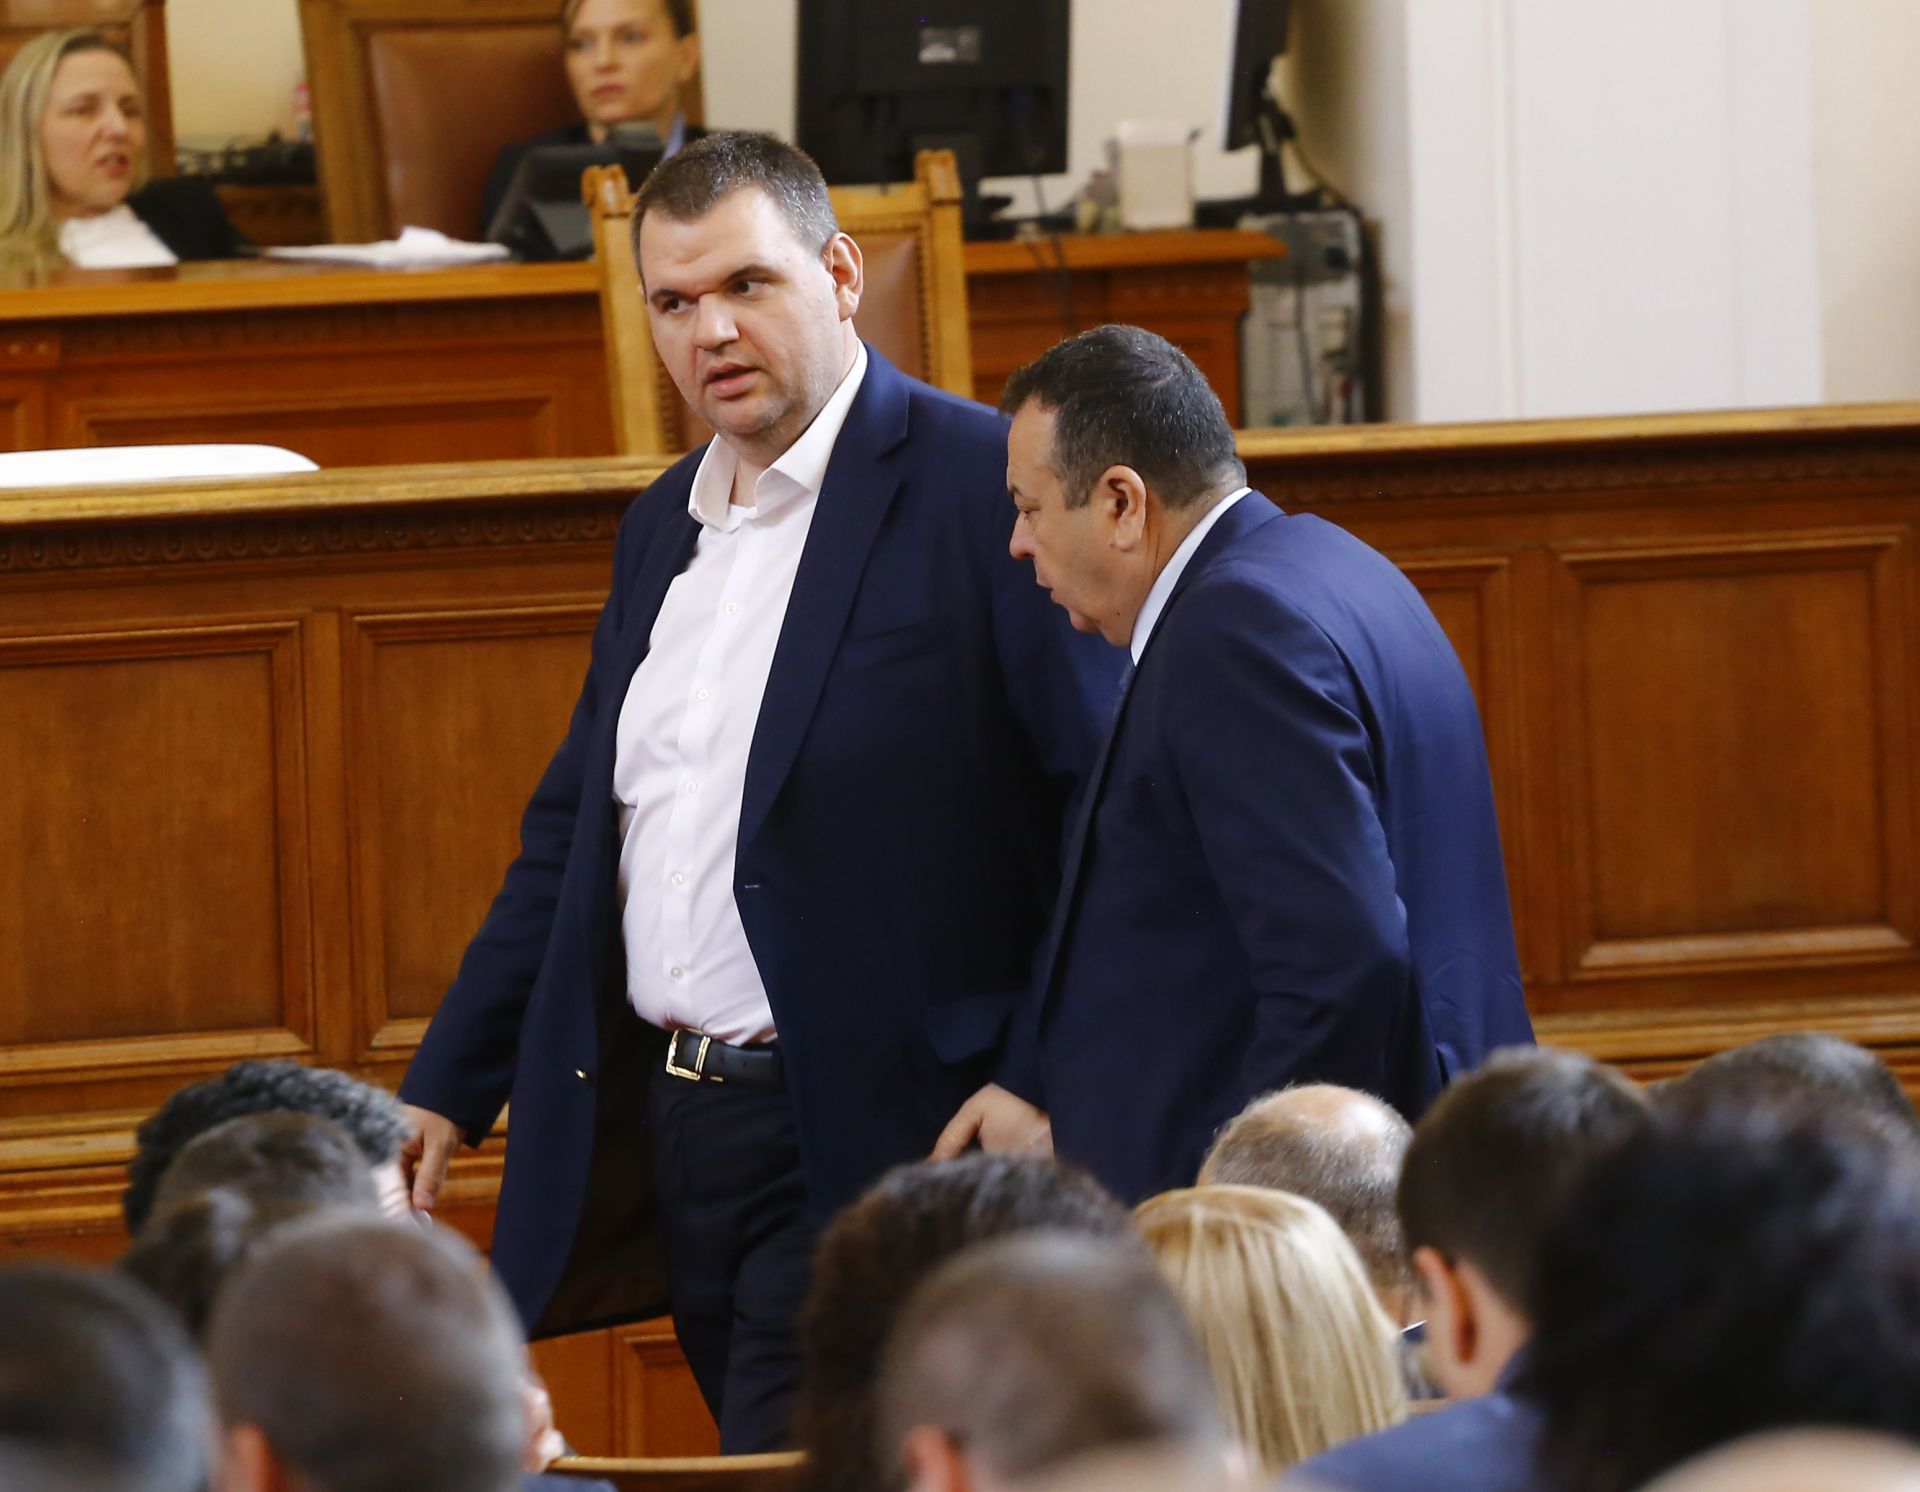 Делян Пеевски зае важна позиция в парламента